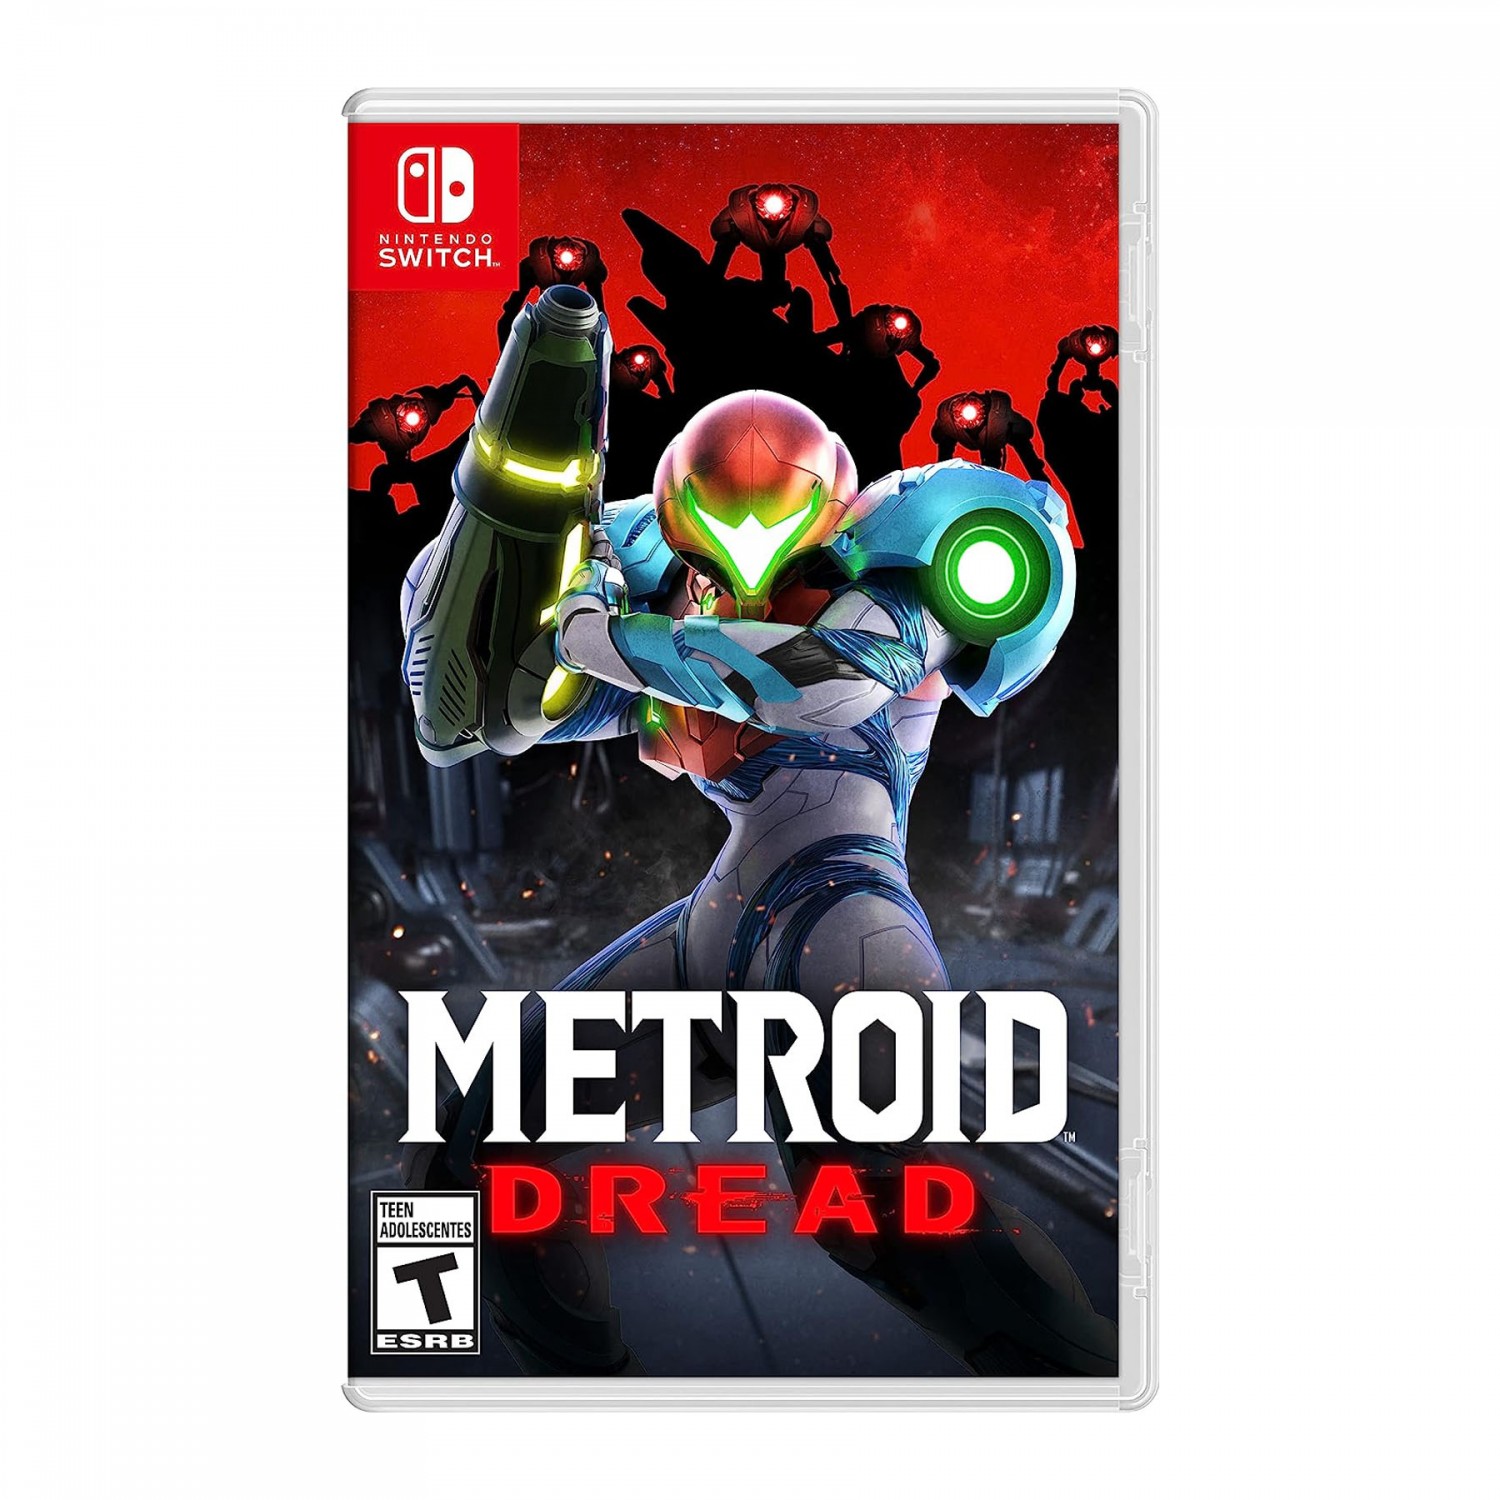 Ø¨Ø§Ø²ÛŒ Metroid Dread - Nintendo Switch